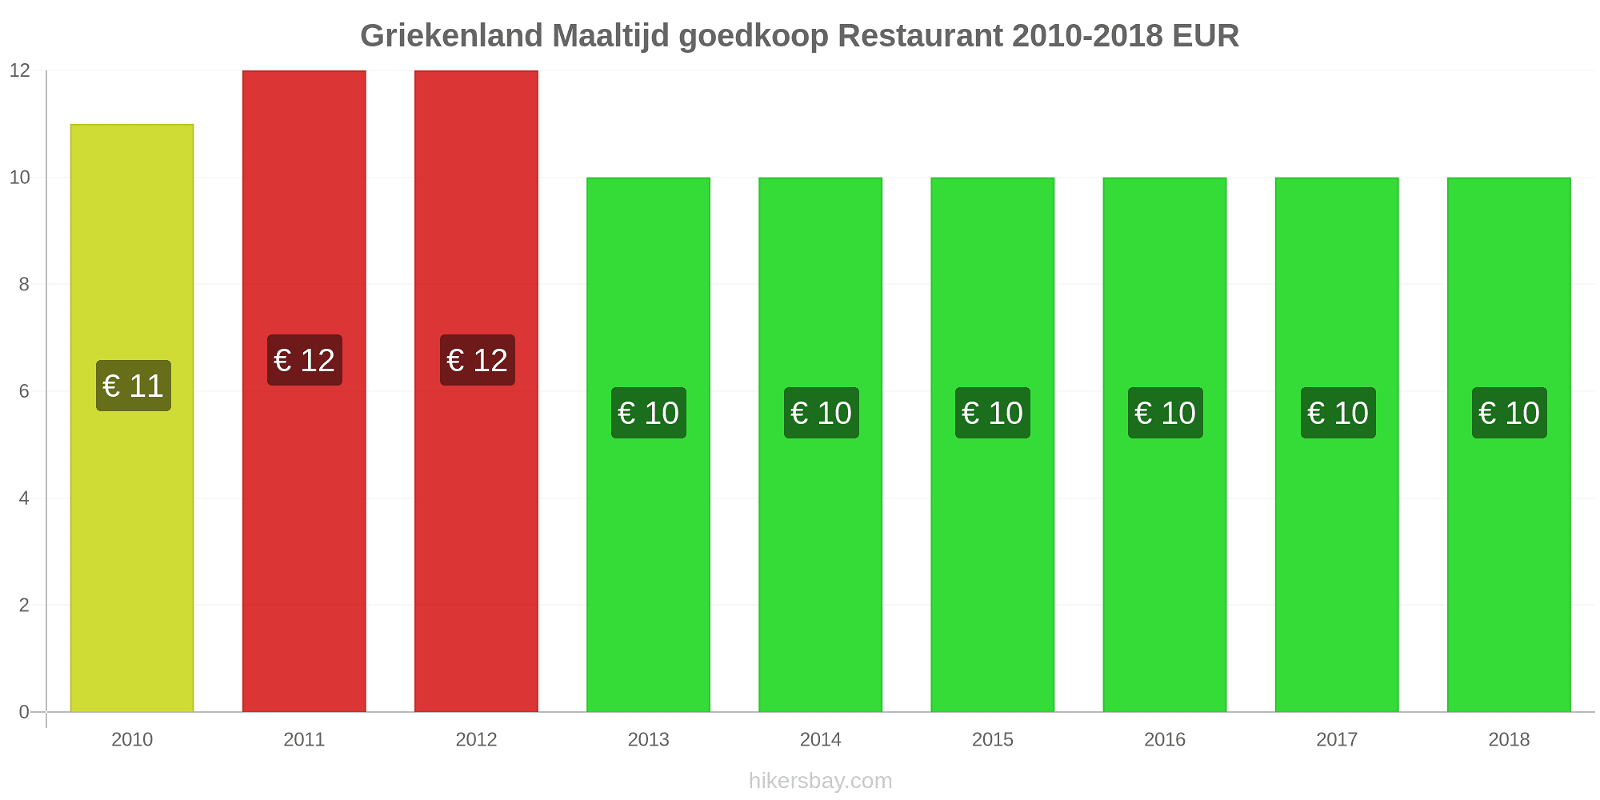 Griekenland prijswijzigingen Maaltijd in een goedkoop restaurant hikersbay.com